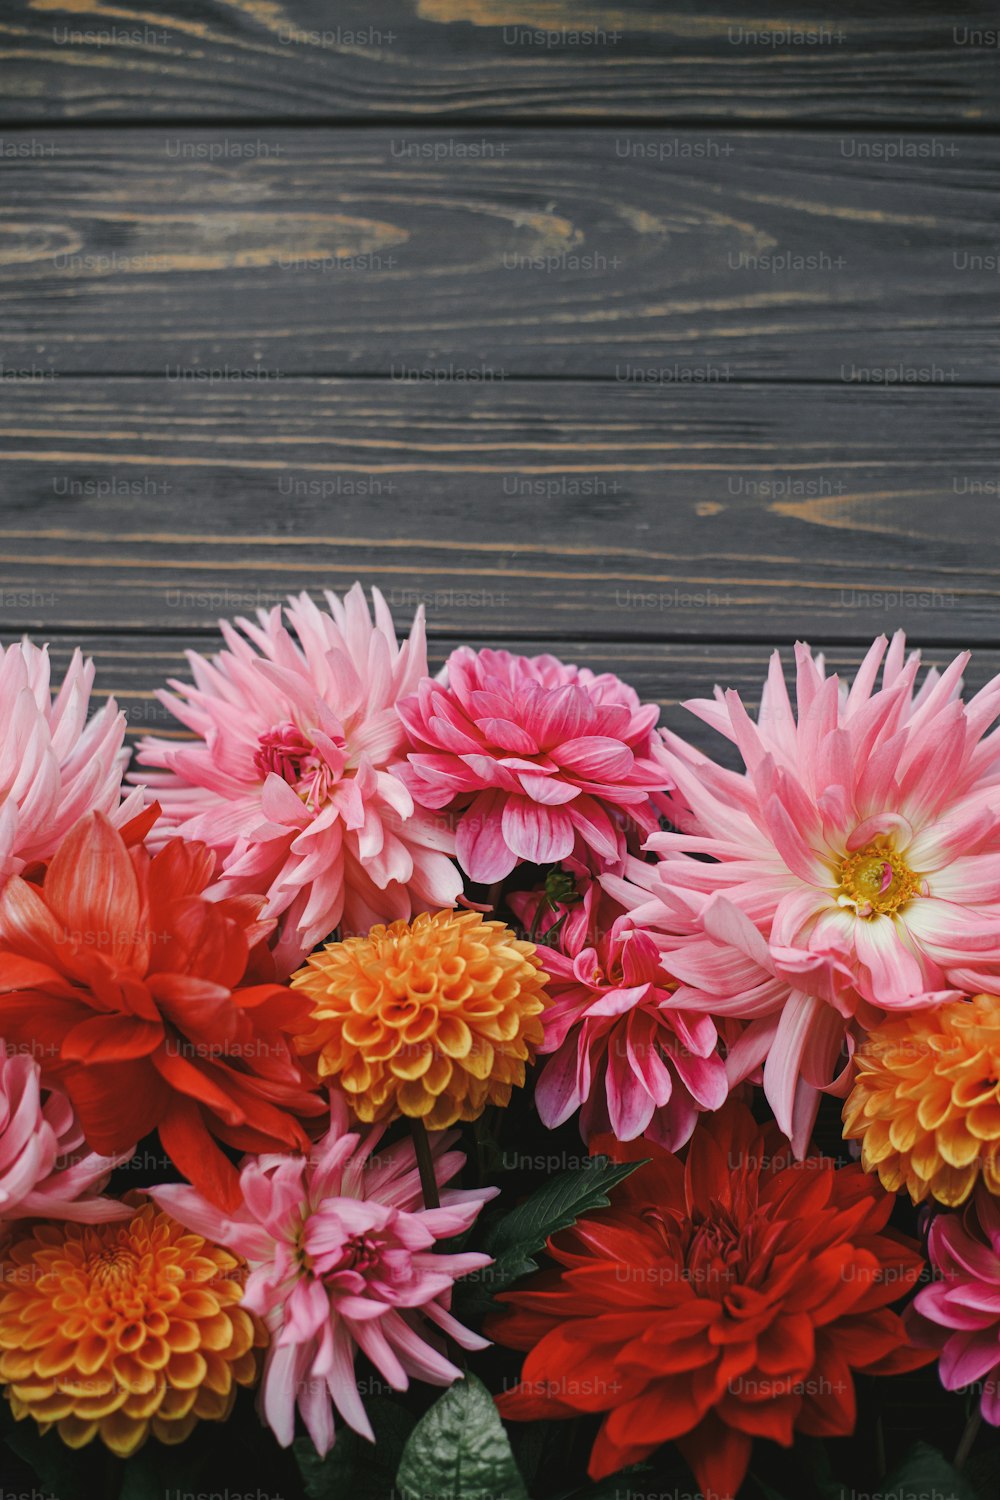 Hoa thuỷ tiên mùa thu tưởng chừng chỉ là một màu tím xinh đẹp. Nhưng nếu nhìn tỉ mẩn hơn, bạn sẽ thấy những đường nét tinh tế và sắc màu đa dạng, cần chỉnh chu để tạo nên bức tranh hoa tươi đẹp. Hãy khám phá những chi tiết tuyệt vời này trong hình ảnh!